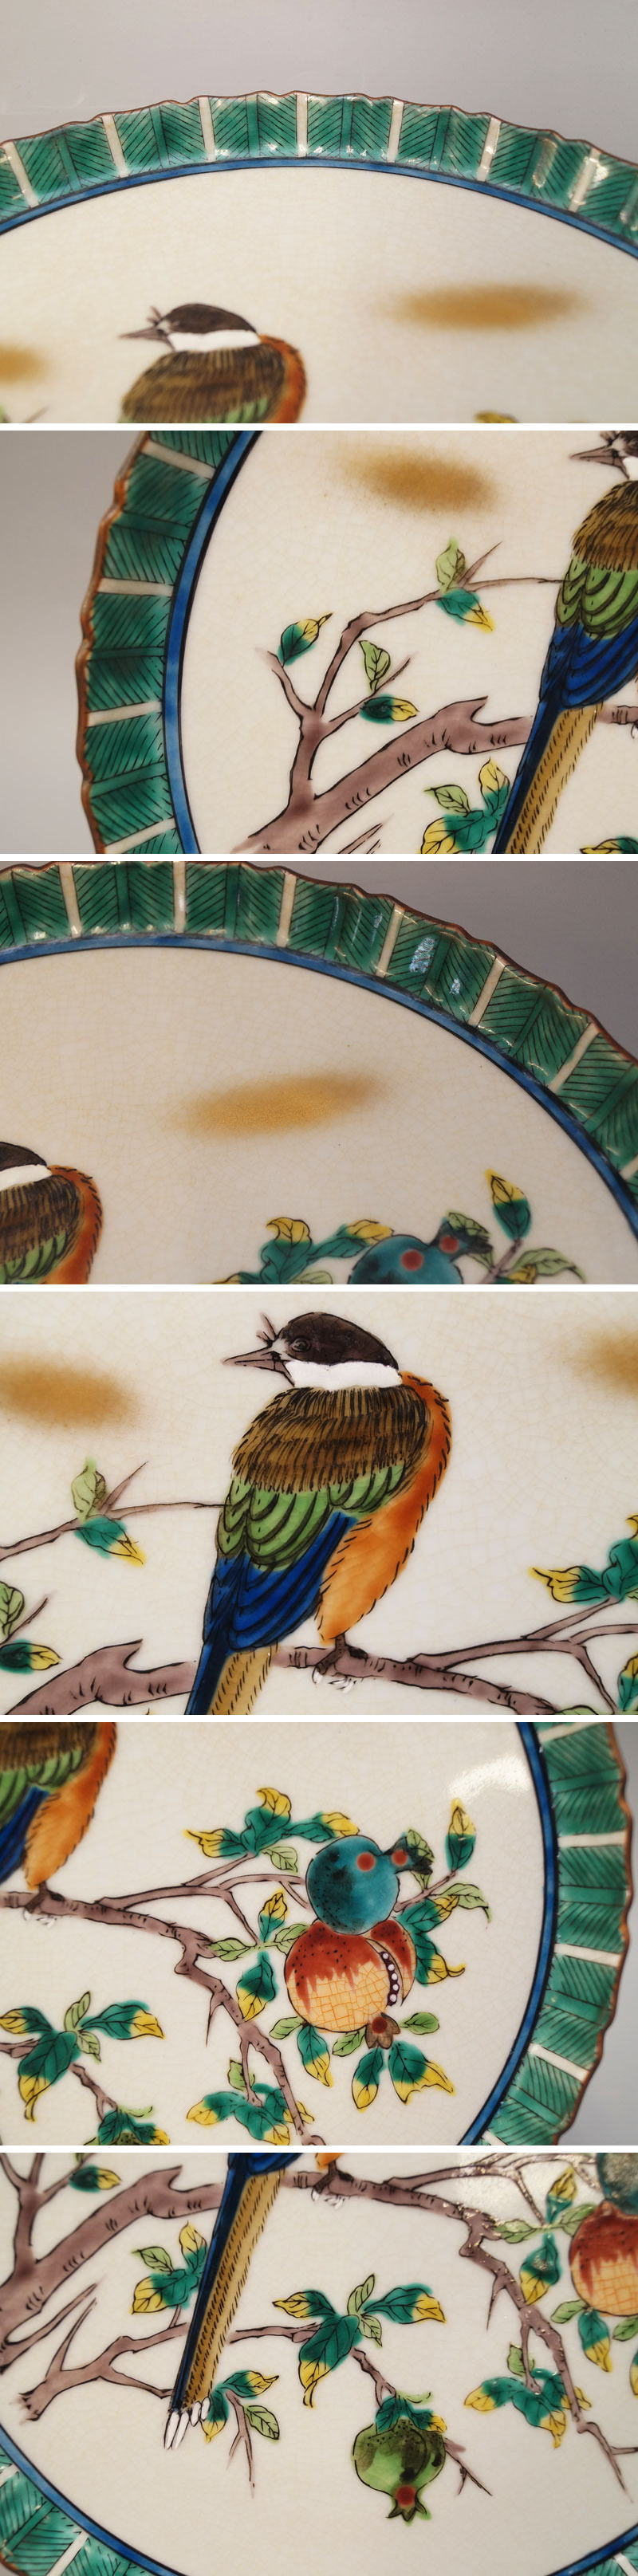 【定番限定SALE】九谷焼 皿 銘有 色絵鳥之図 28.5cm 大皿-568 皿